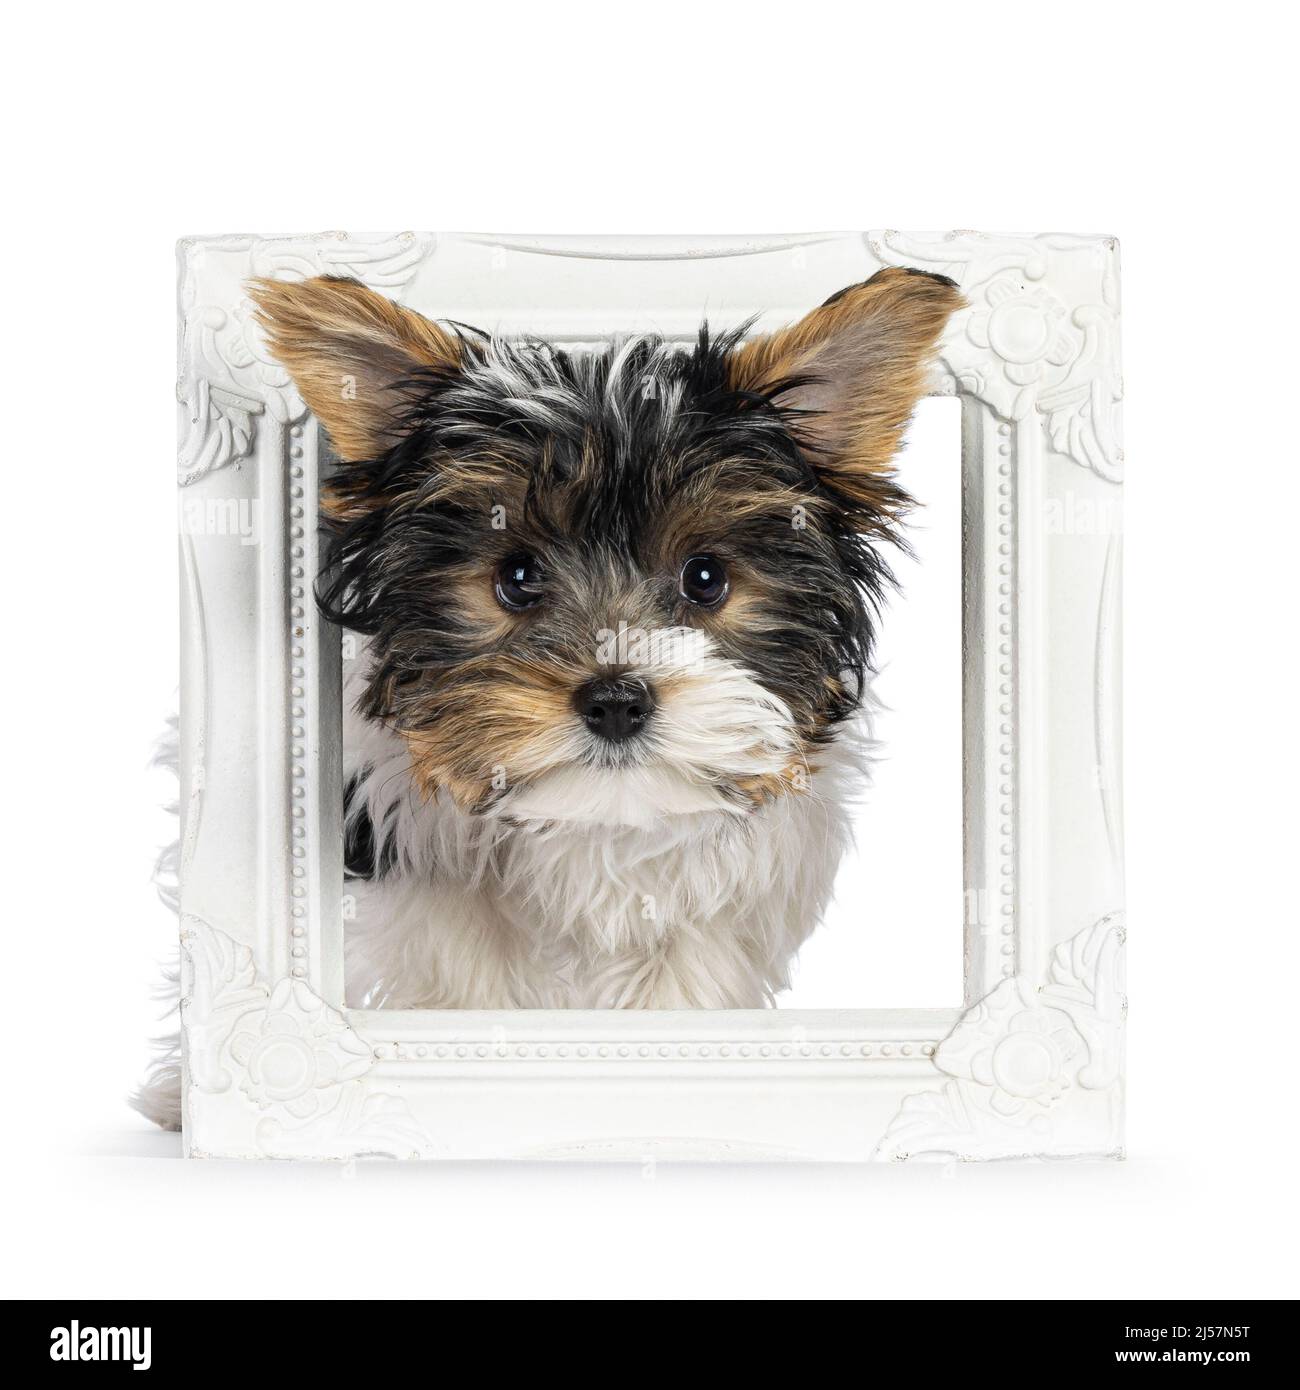 Adorable chiot de chien de Yorkshire Terrier, face à l'avant à travers un cadre photo blanc. En regardant vers l'appareil photo. Isolé sur un fond blanc. Banque D'Images